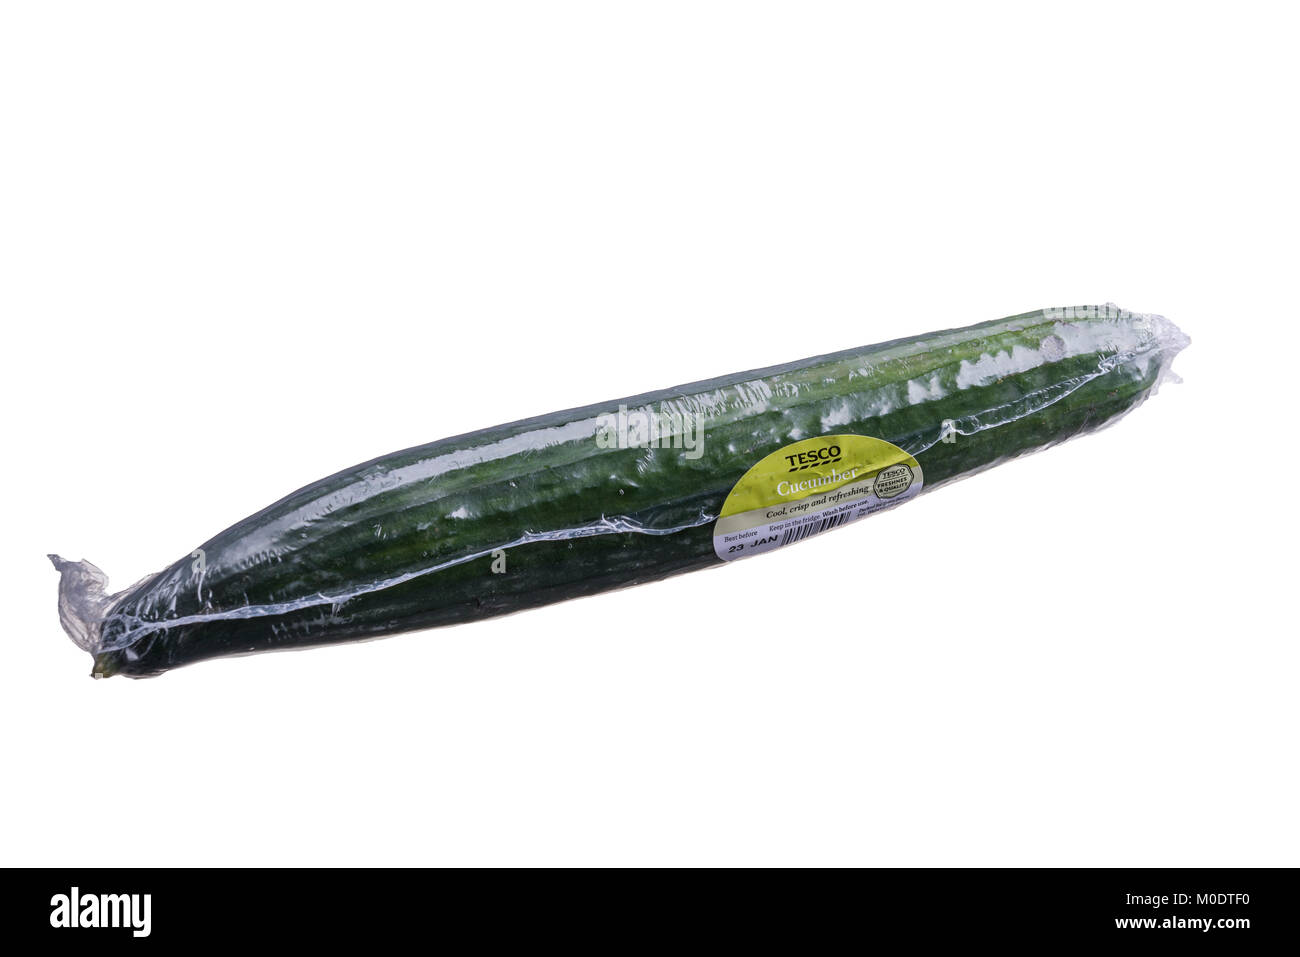 Il cetriolo avvolti in materiale plastico, supermercato degli imballaggi in plastica. Foto Stock